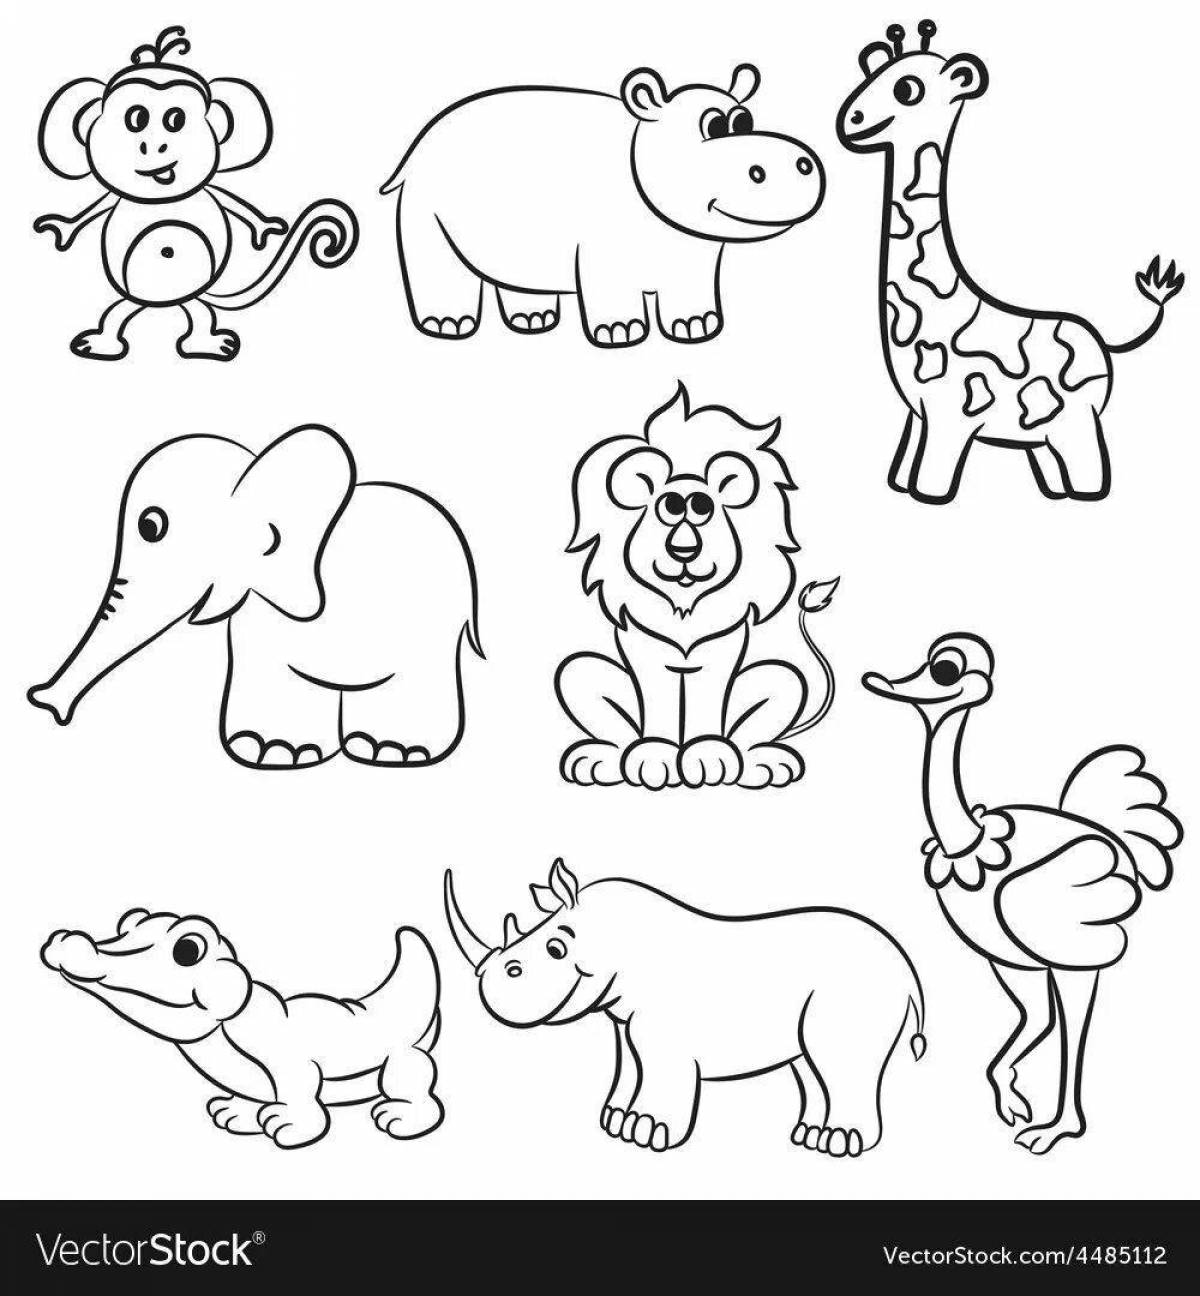 Творческая раскраска африканских животных для детей 4-5 лет